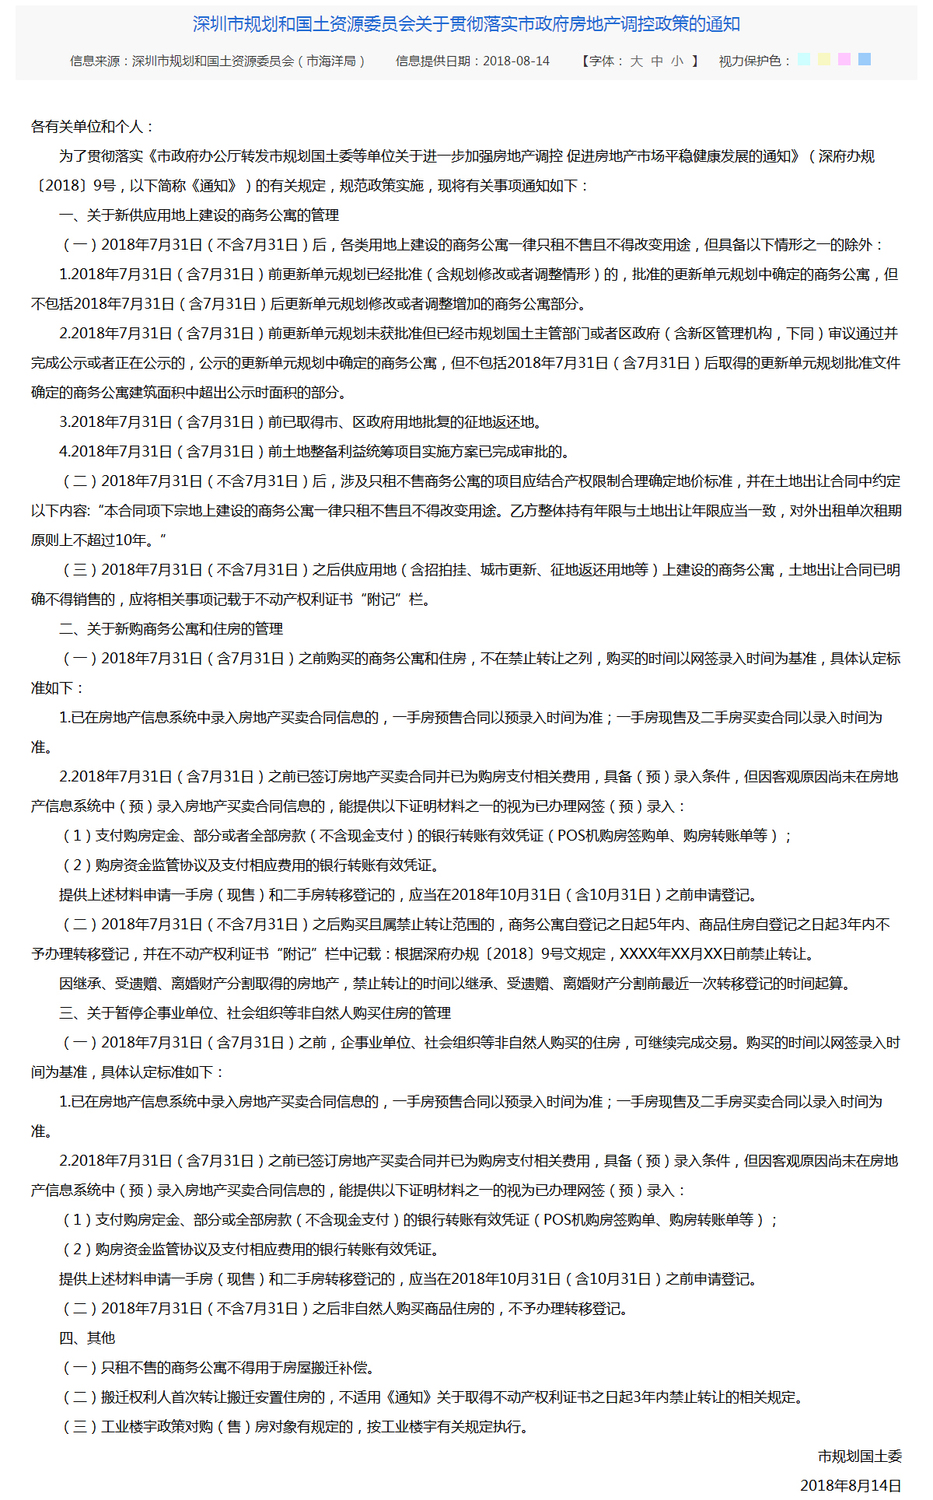 深圳市规划和国土资源委员会关于贯彻落实市政府房地产调控政策的通知--通知公告.jpg